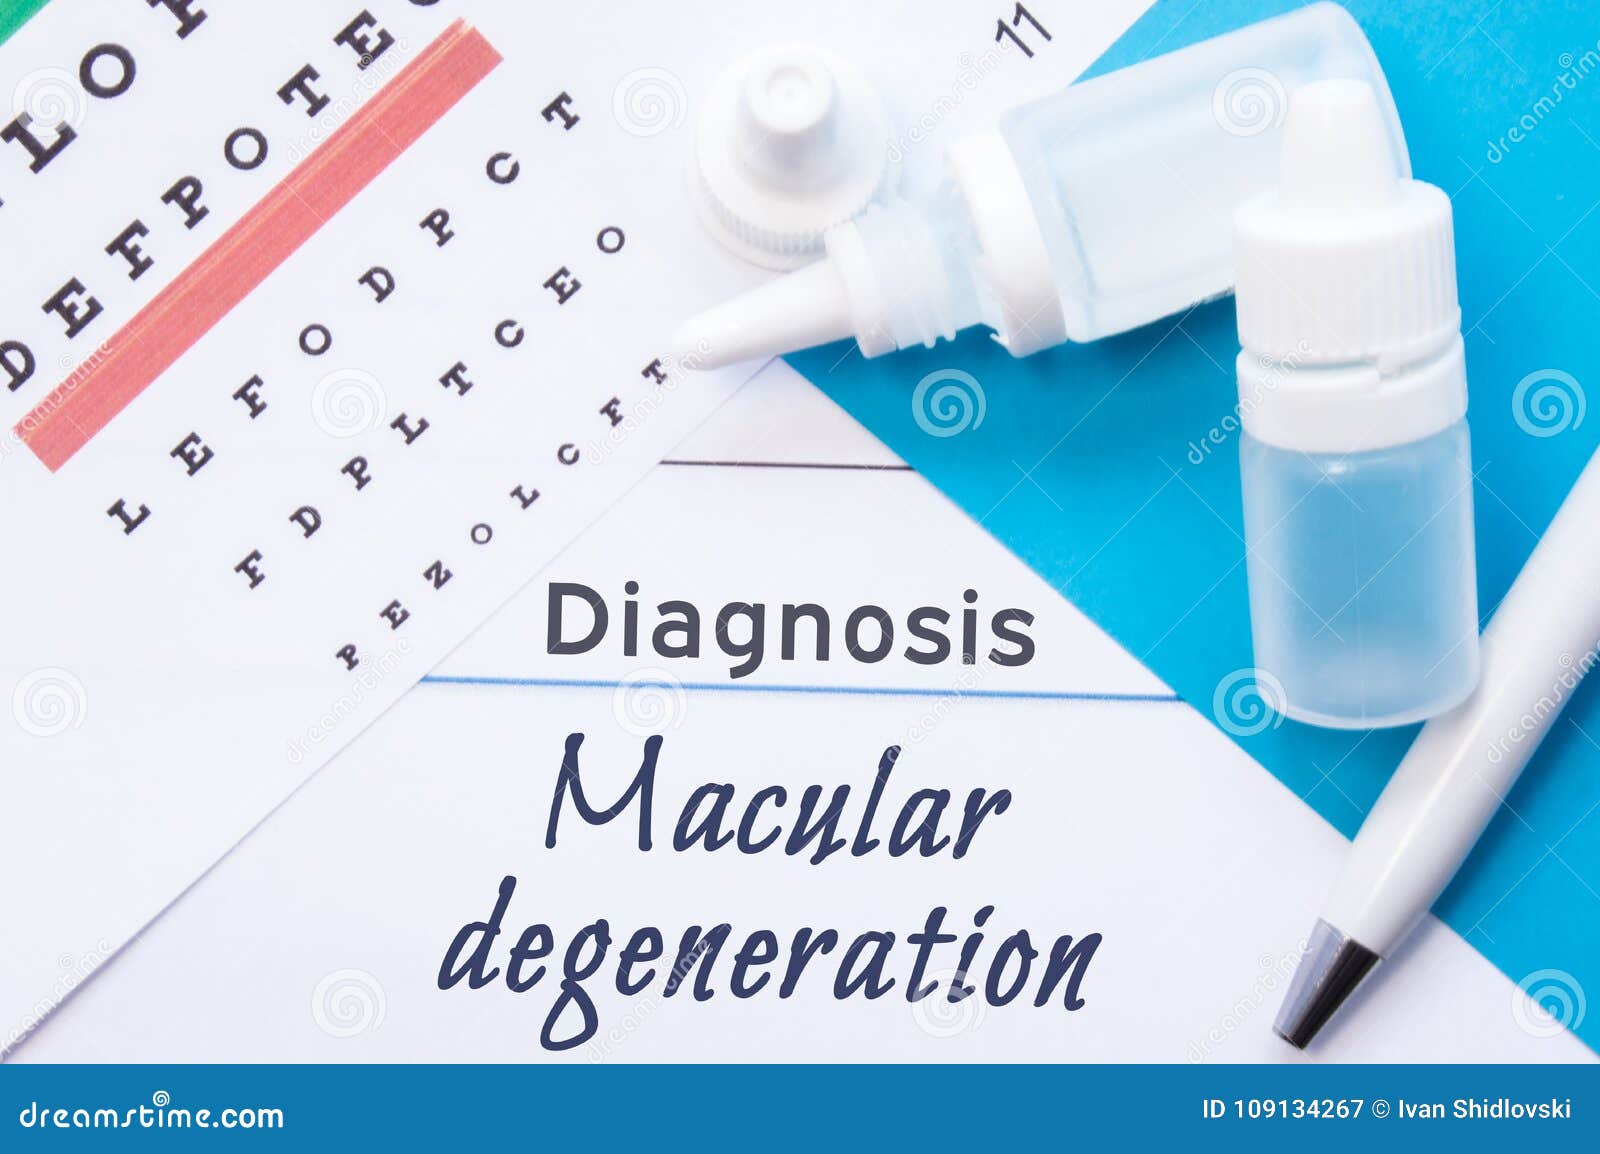 Eye Test Chart For Macular Degeneration